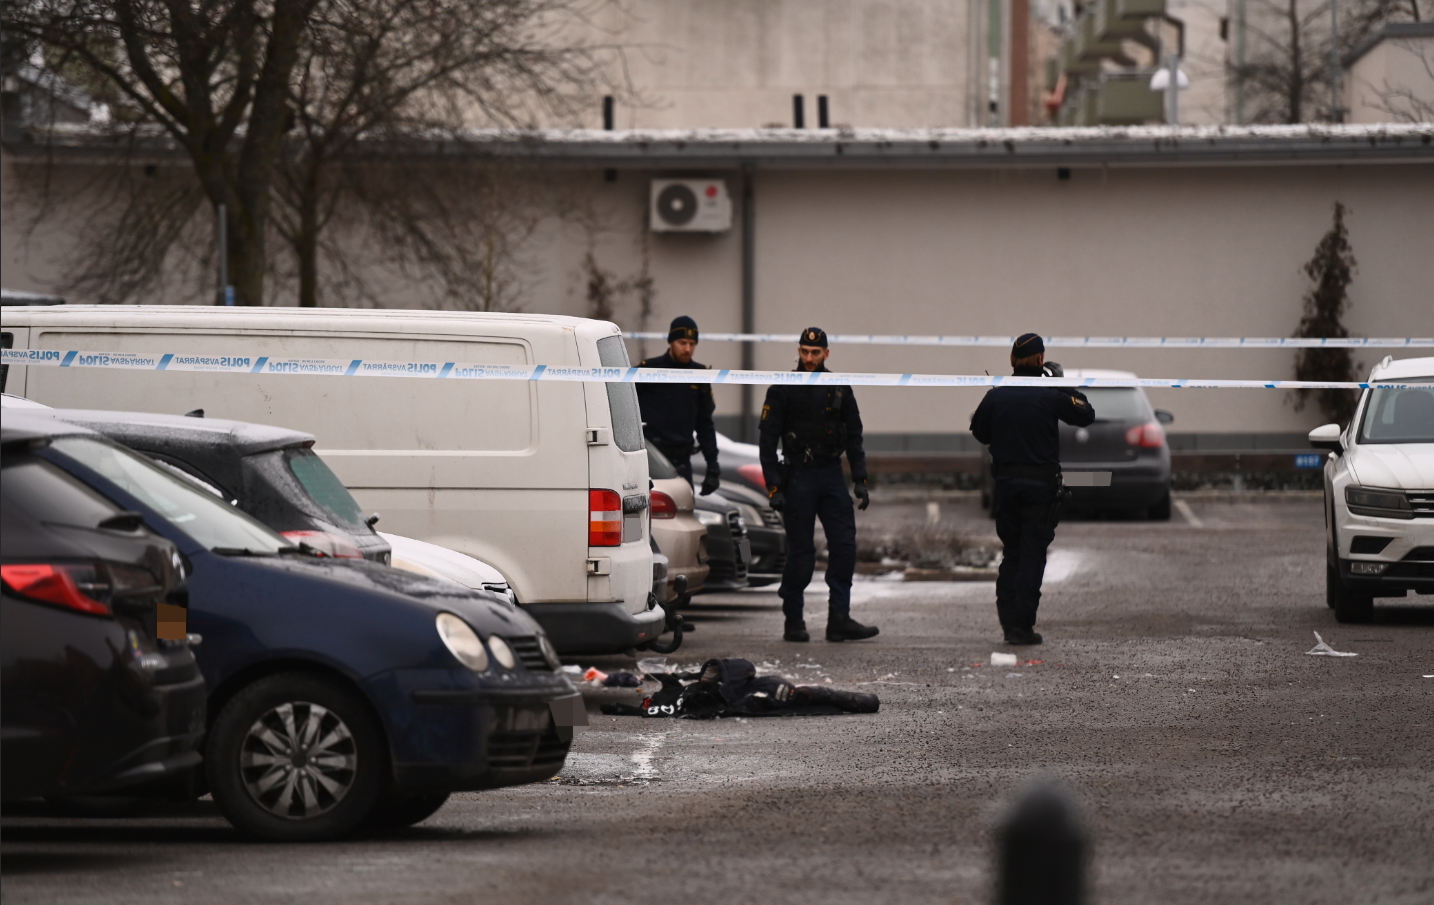 Polis i arbete på den parkering i Rinkeby där mannen sköts på juldagsmorgonen.